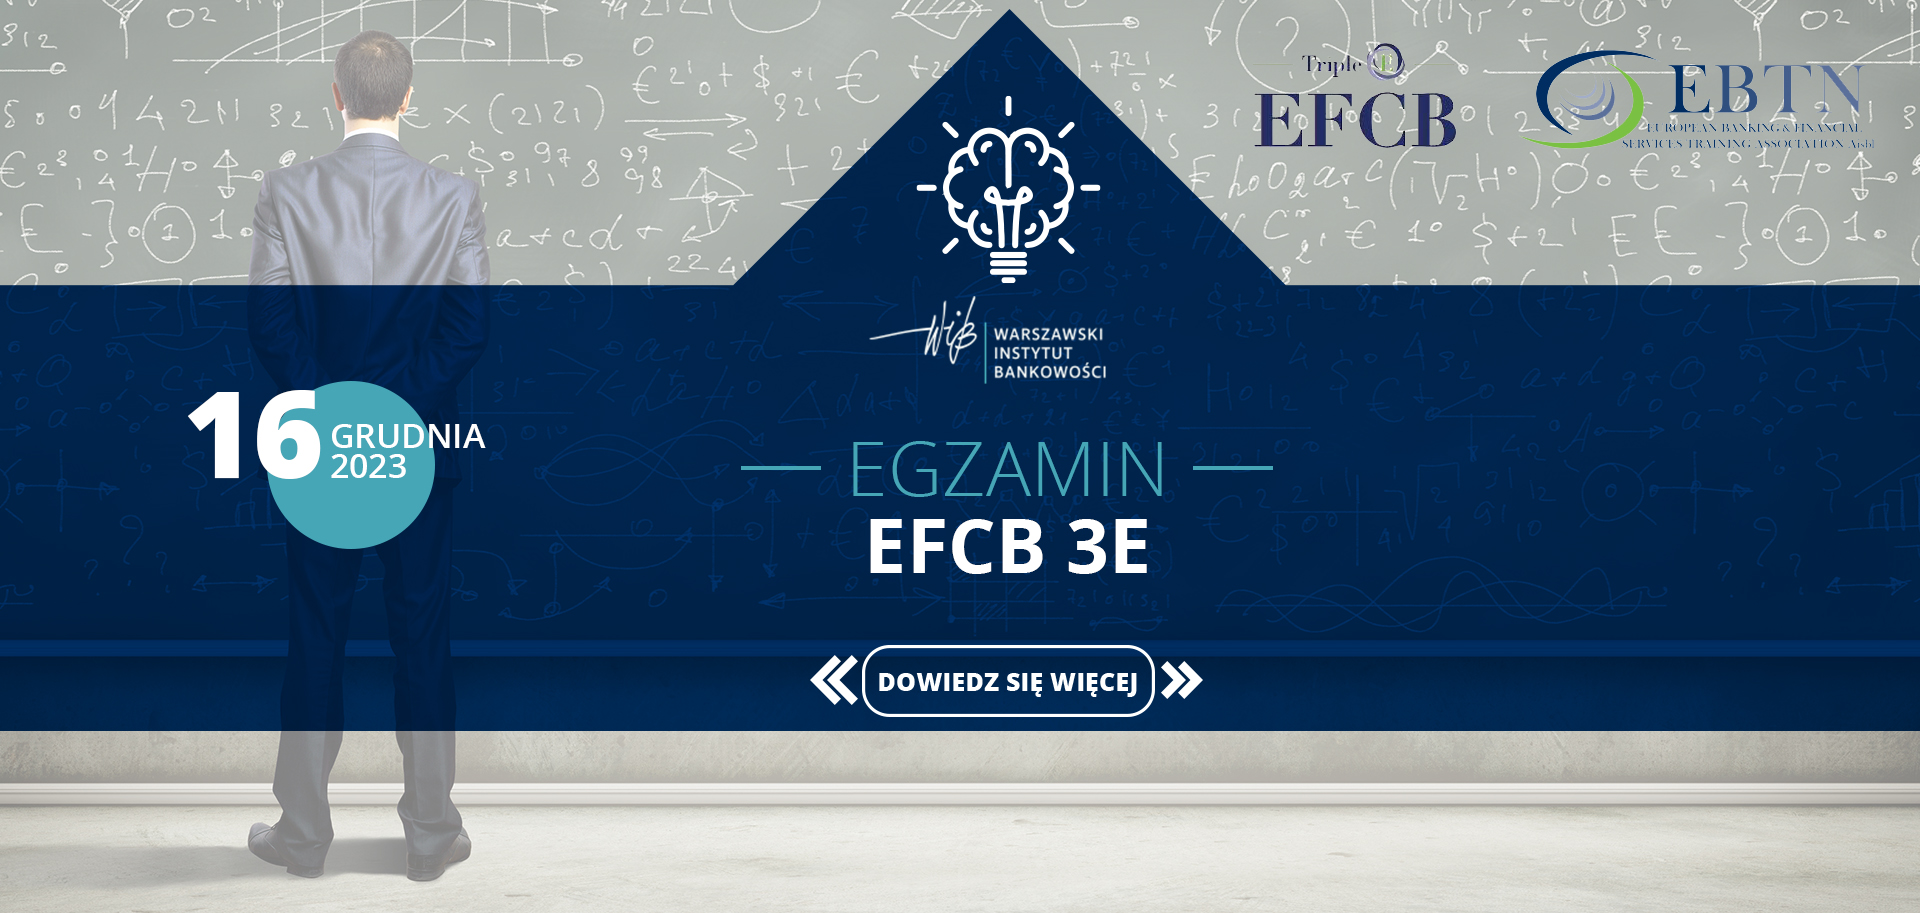 WIB_Egzamin EFCB 3E_1920x913_16grudnia